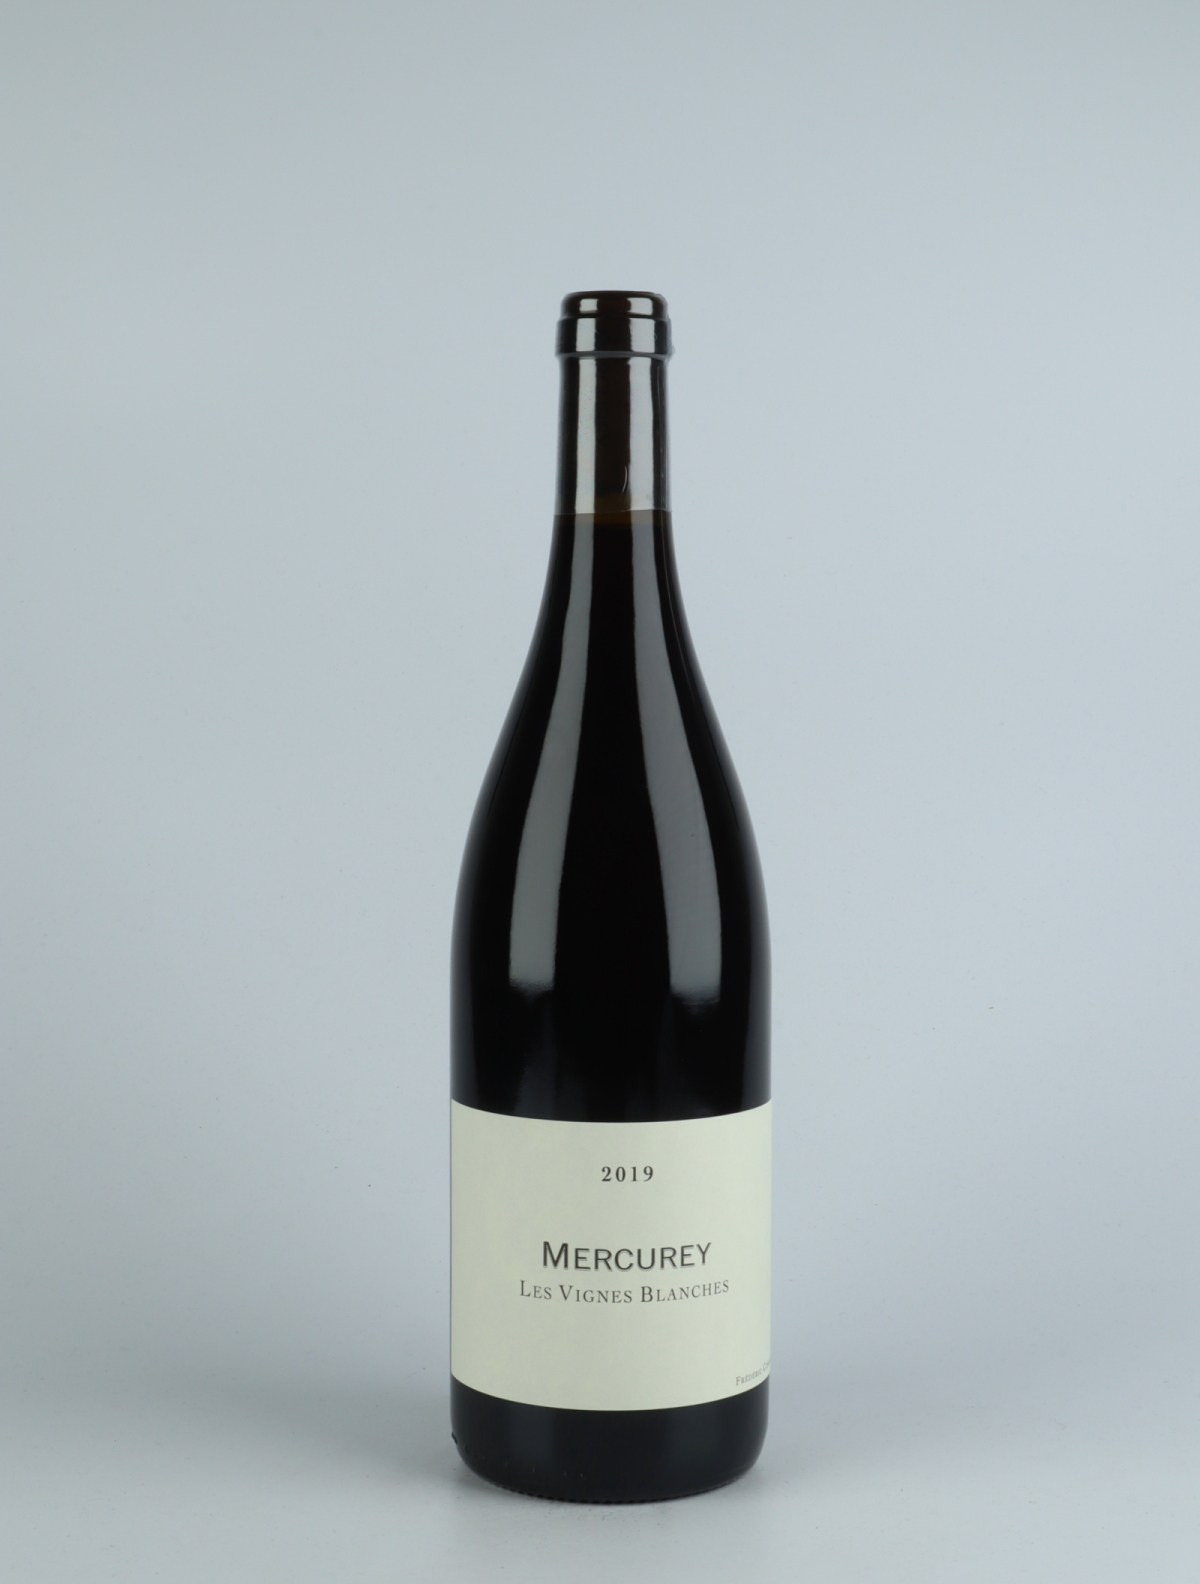 En flaske 2019 Mercurey - Les Vignes Blanches - Qvevris Rødvin fra Frédéric Cossard, Bourgogne i Frankrig